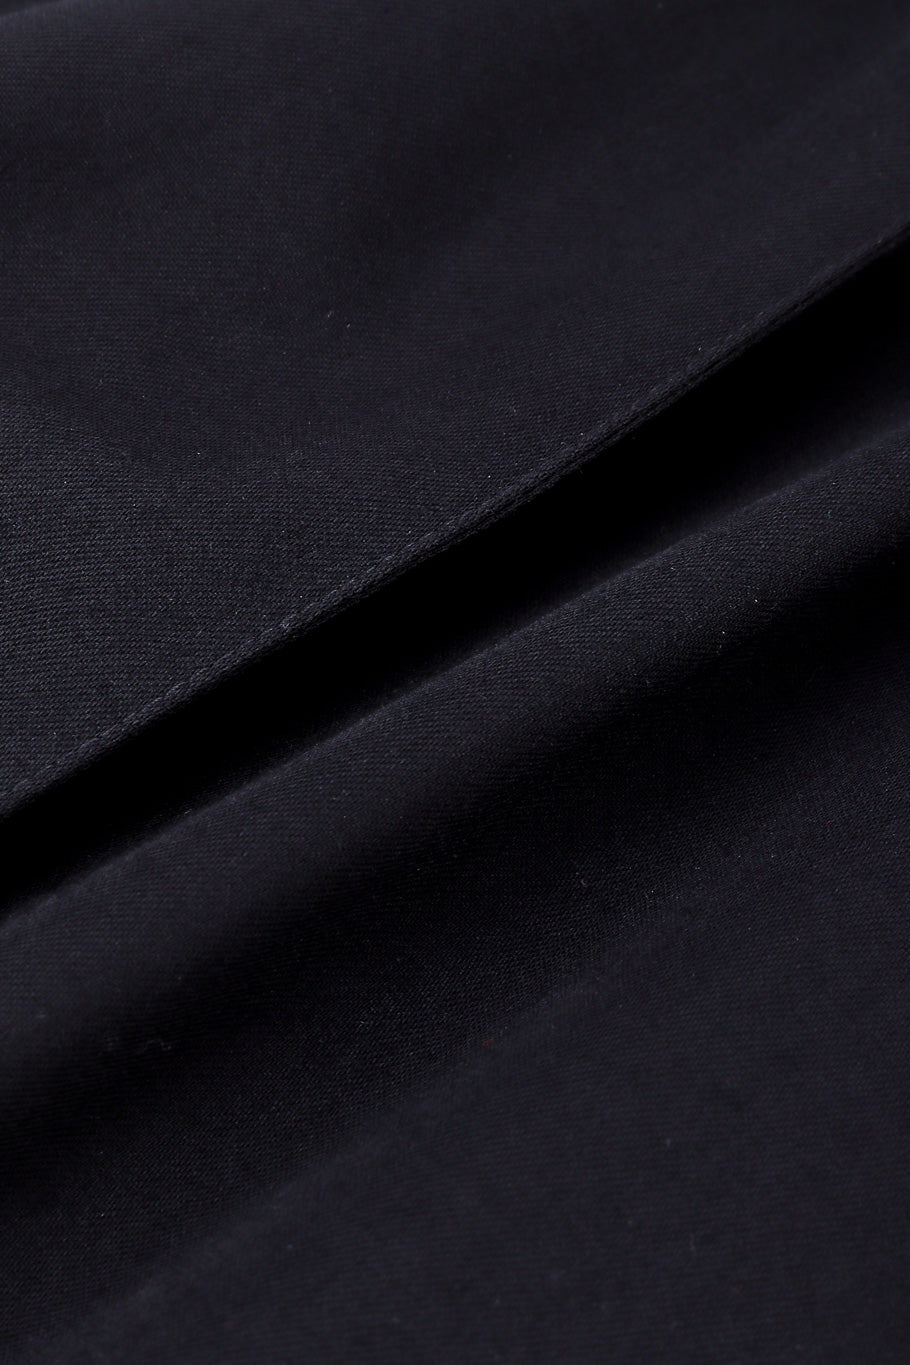 Wool pantsuit by Yves Saint Laurent Rive Gauche fabric close  @recessla